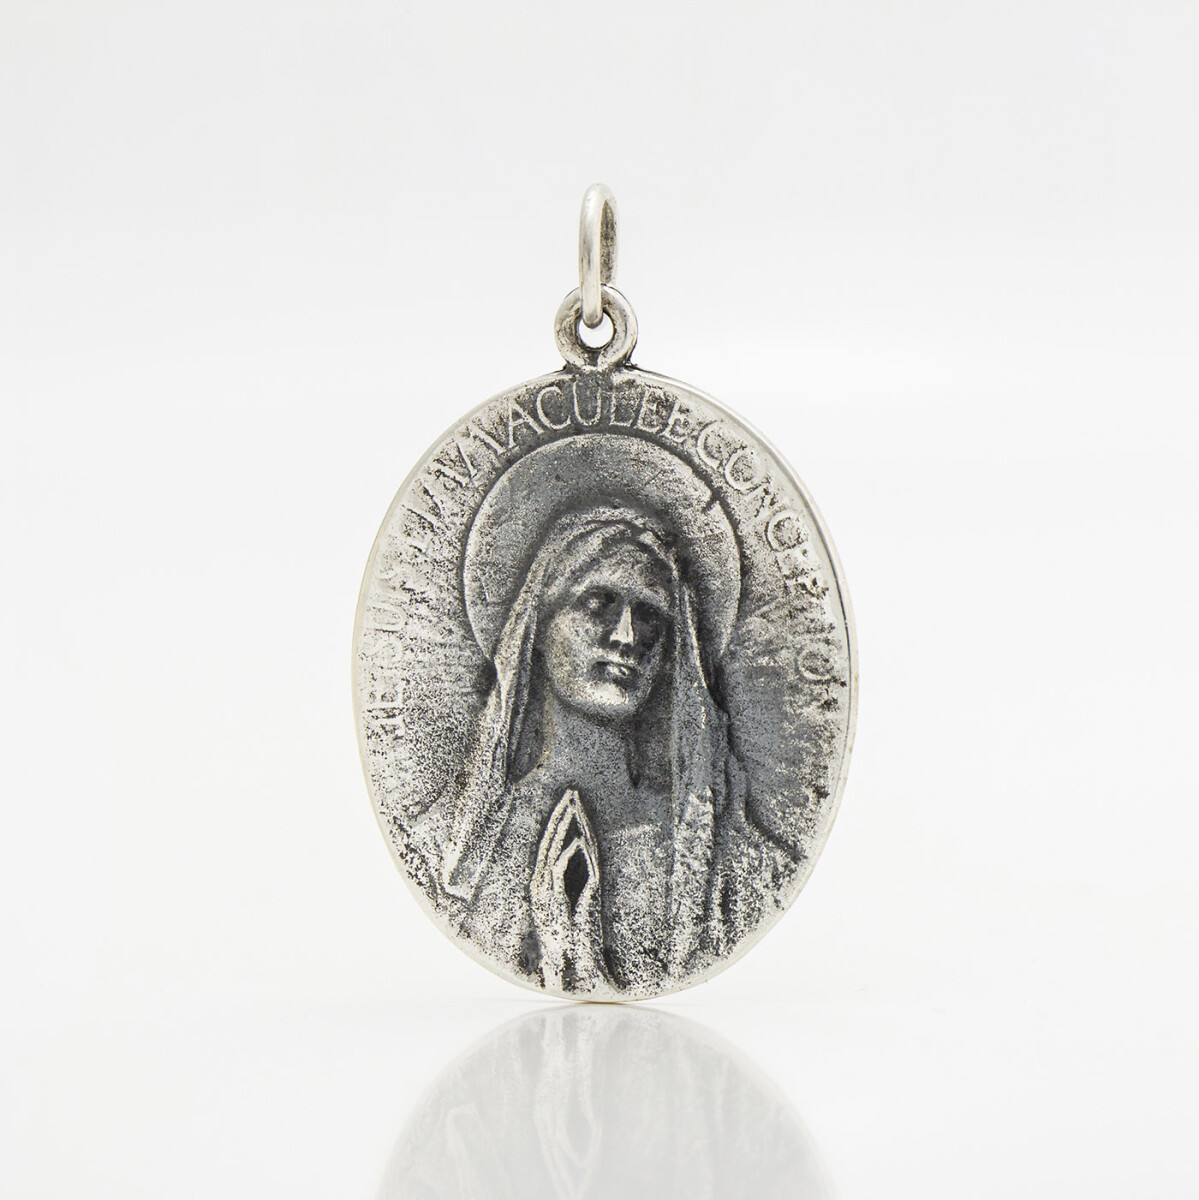 Medalla religiosa inmaculada concepción de plata 900, 3.5cm*3cm. 